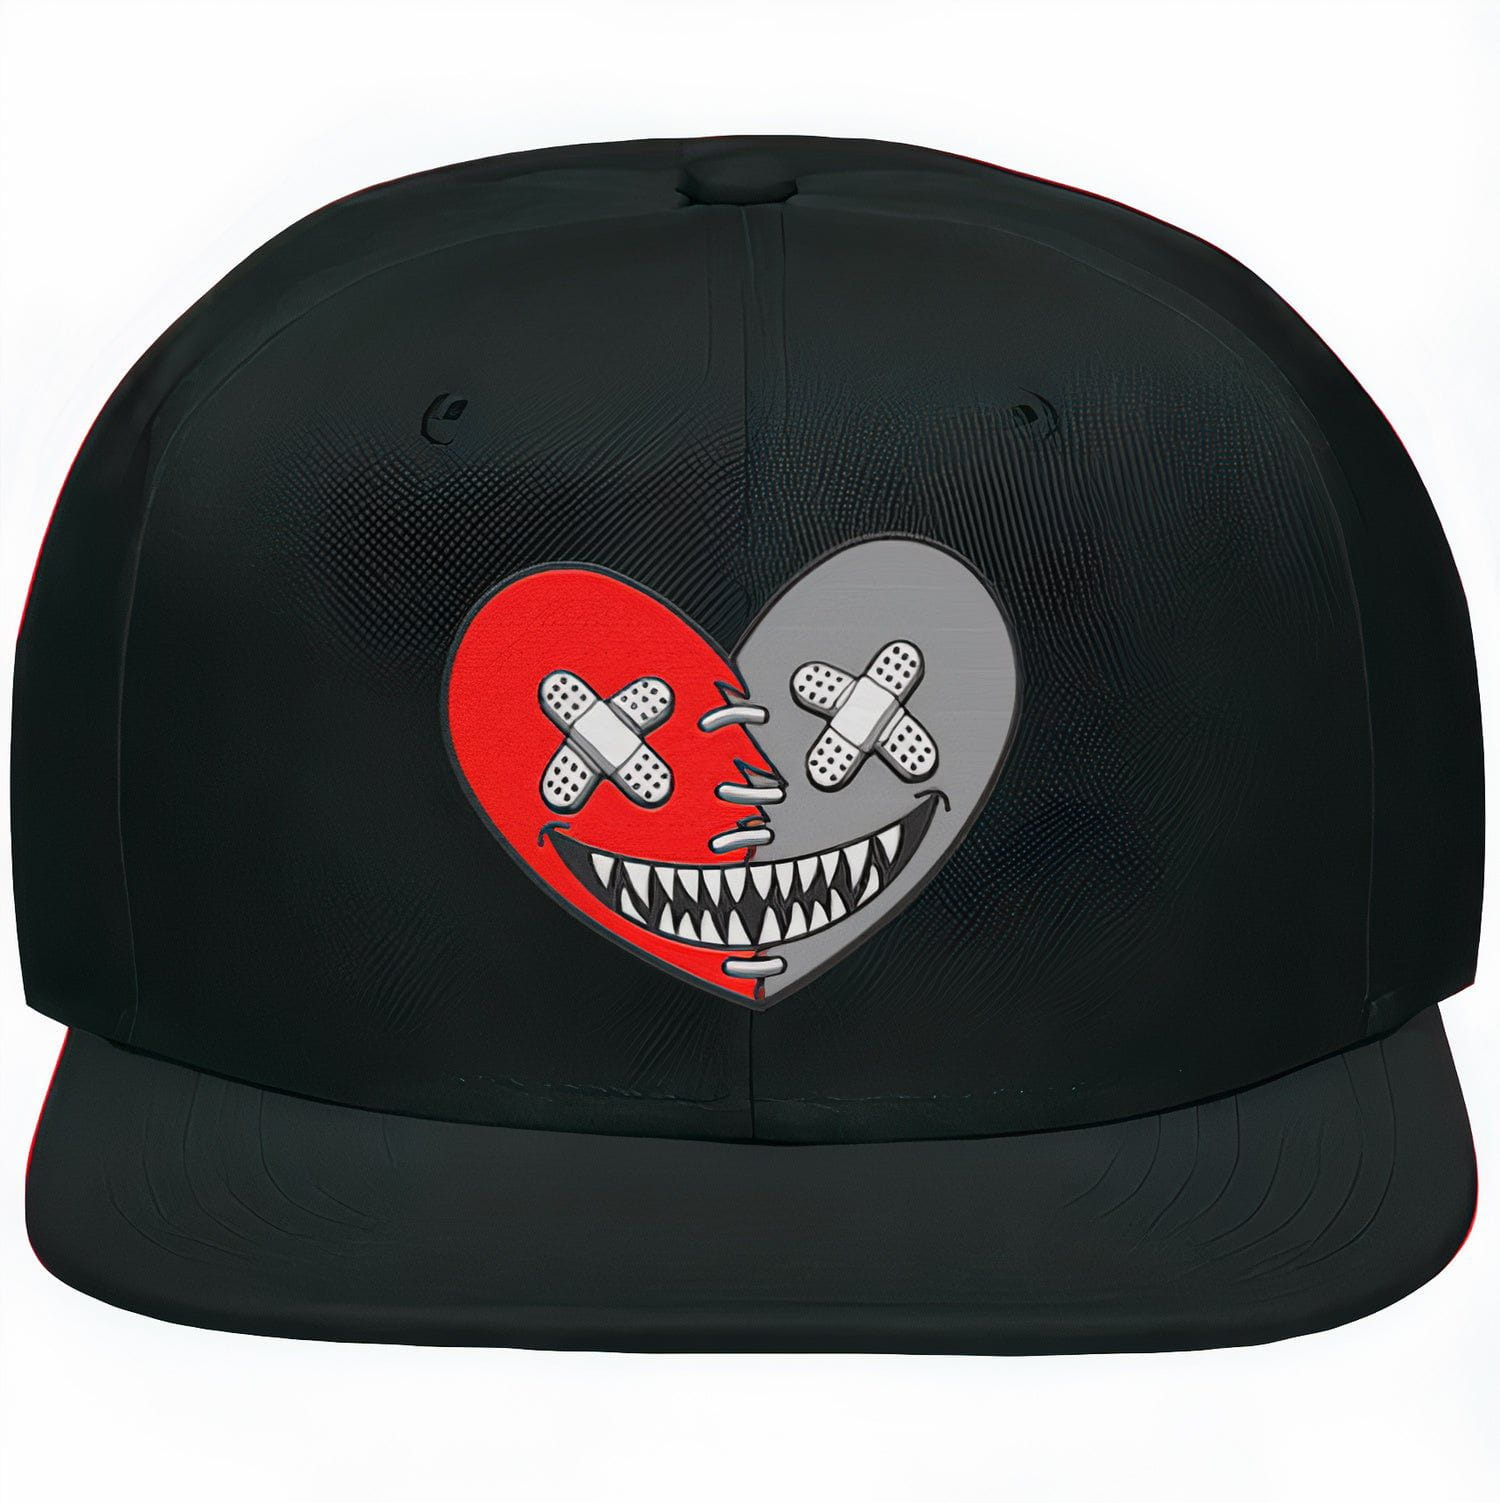 Reverse Oreo 6s Snapback Hat - Jordan 6 Reverse Oreo 6s - Heart Baws